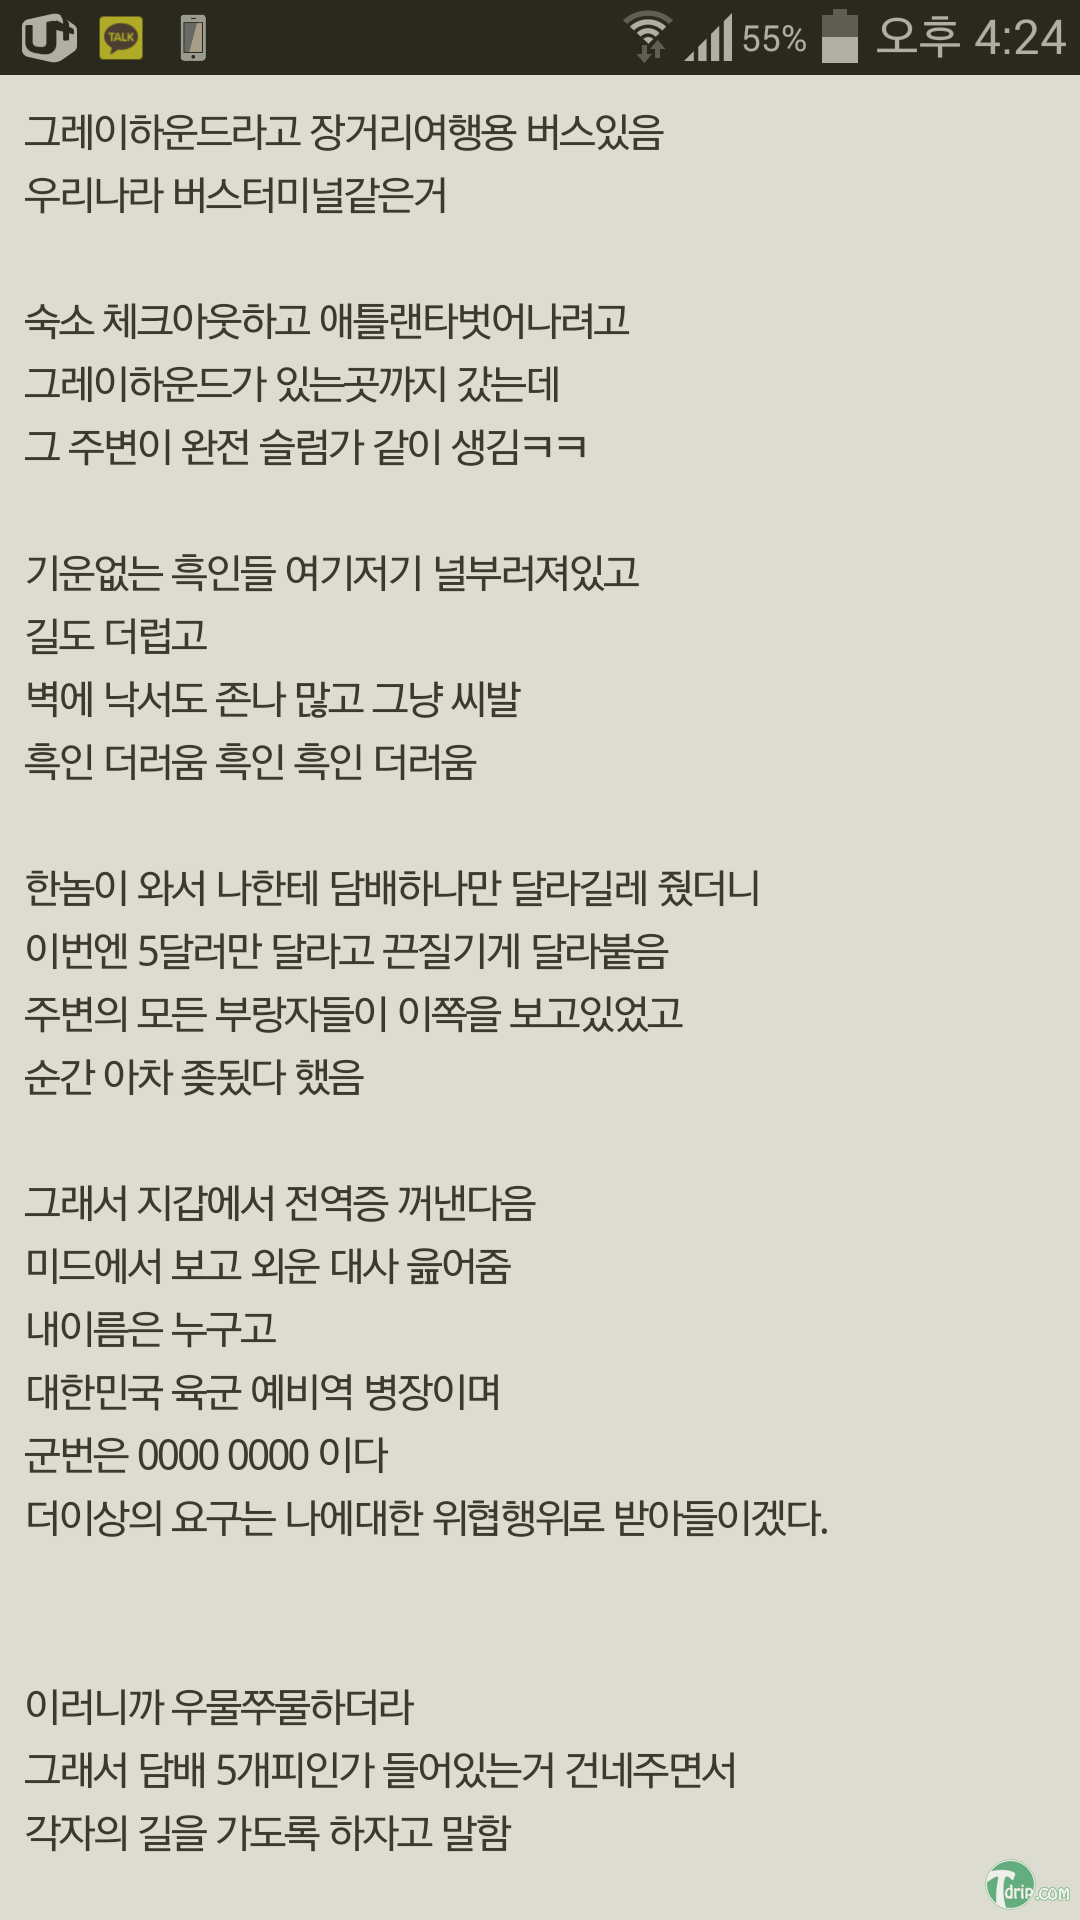 Screenshot_2014-10-16-16-25-00.png : 다시는 대한민국 육군을 무시하지 마라